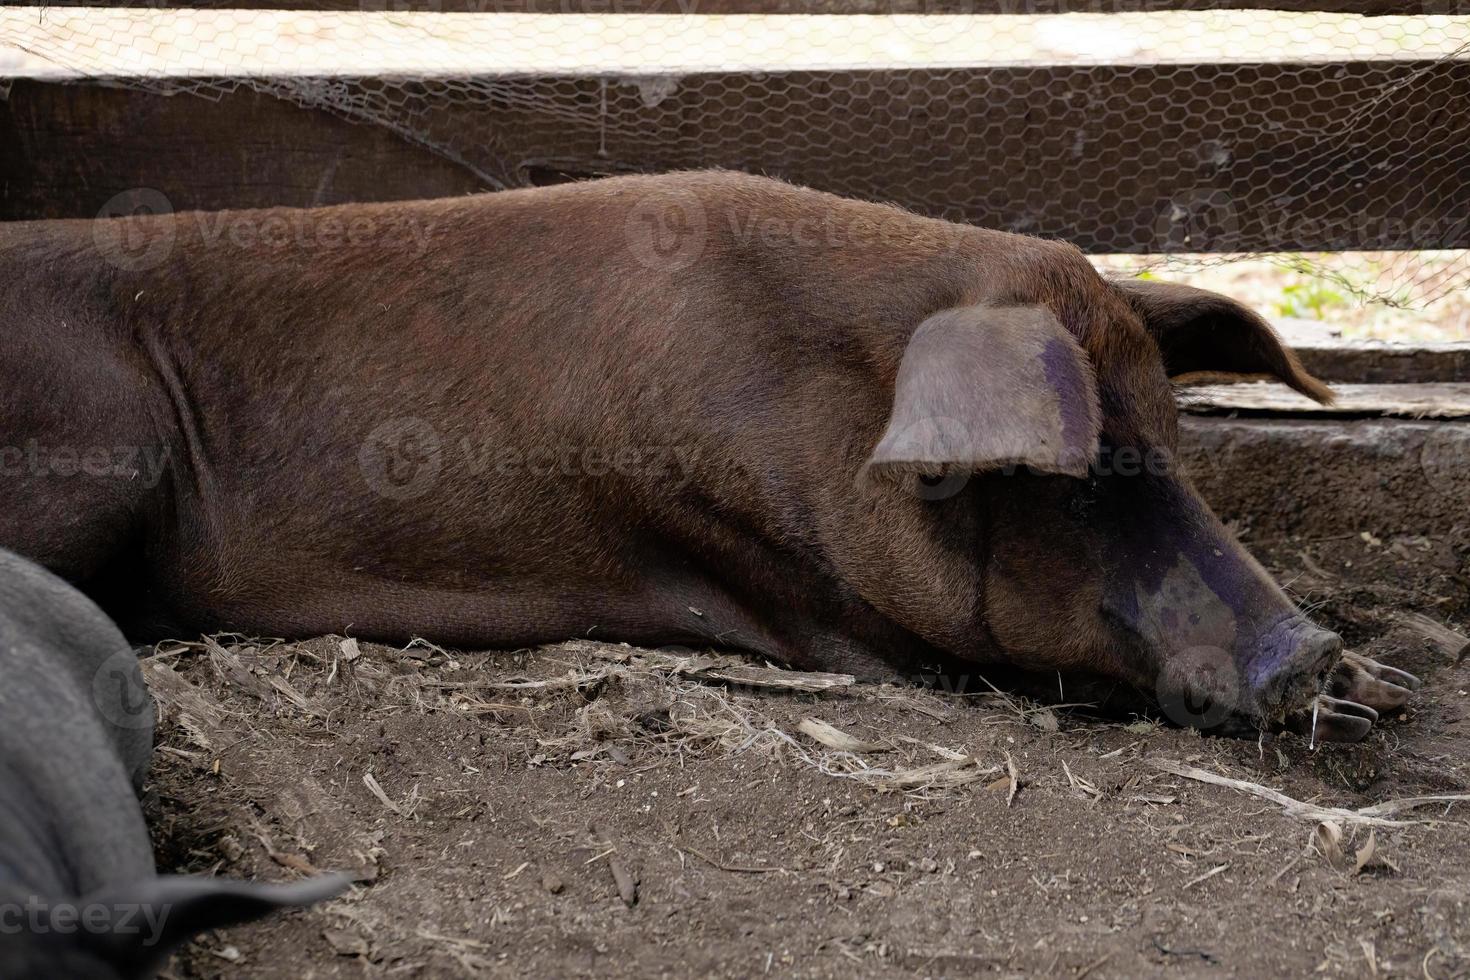 svart gris uppfödd foto